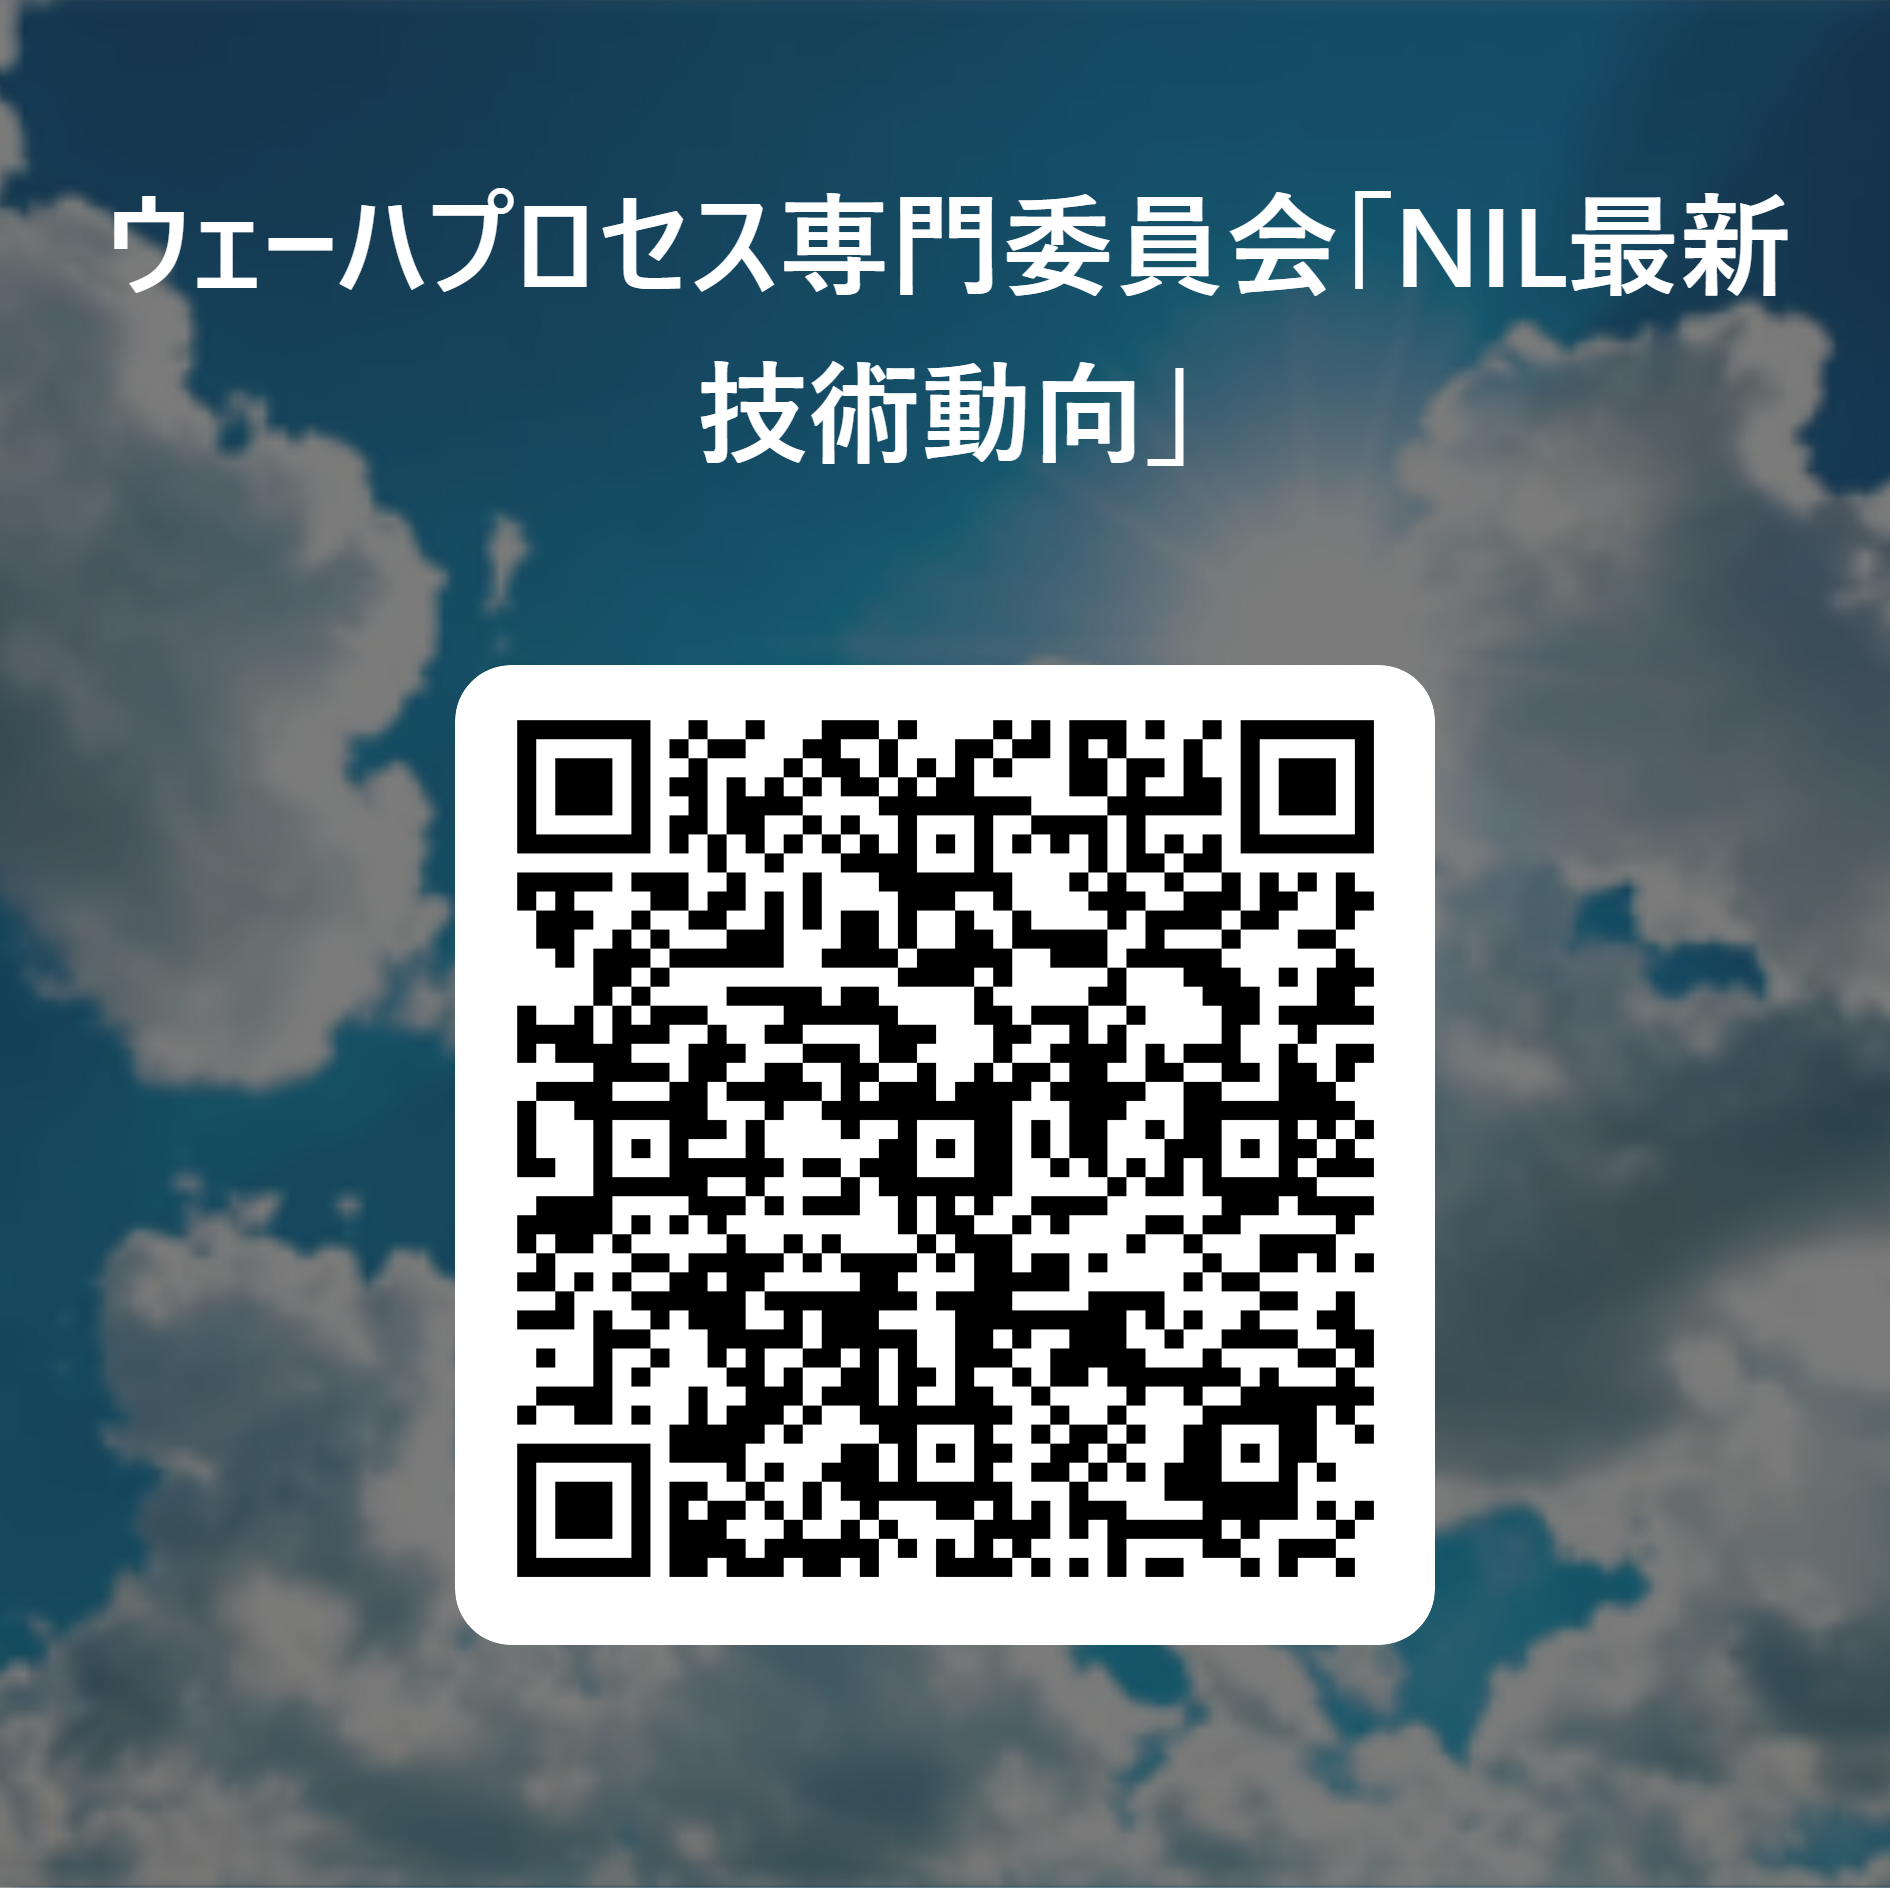 ウェーハプロセス専門委員会「NIL最新技術動向」 用 QR コード.png